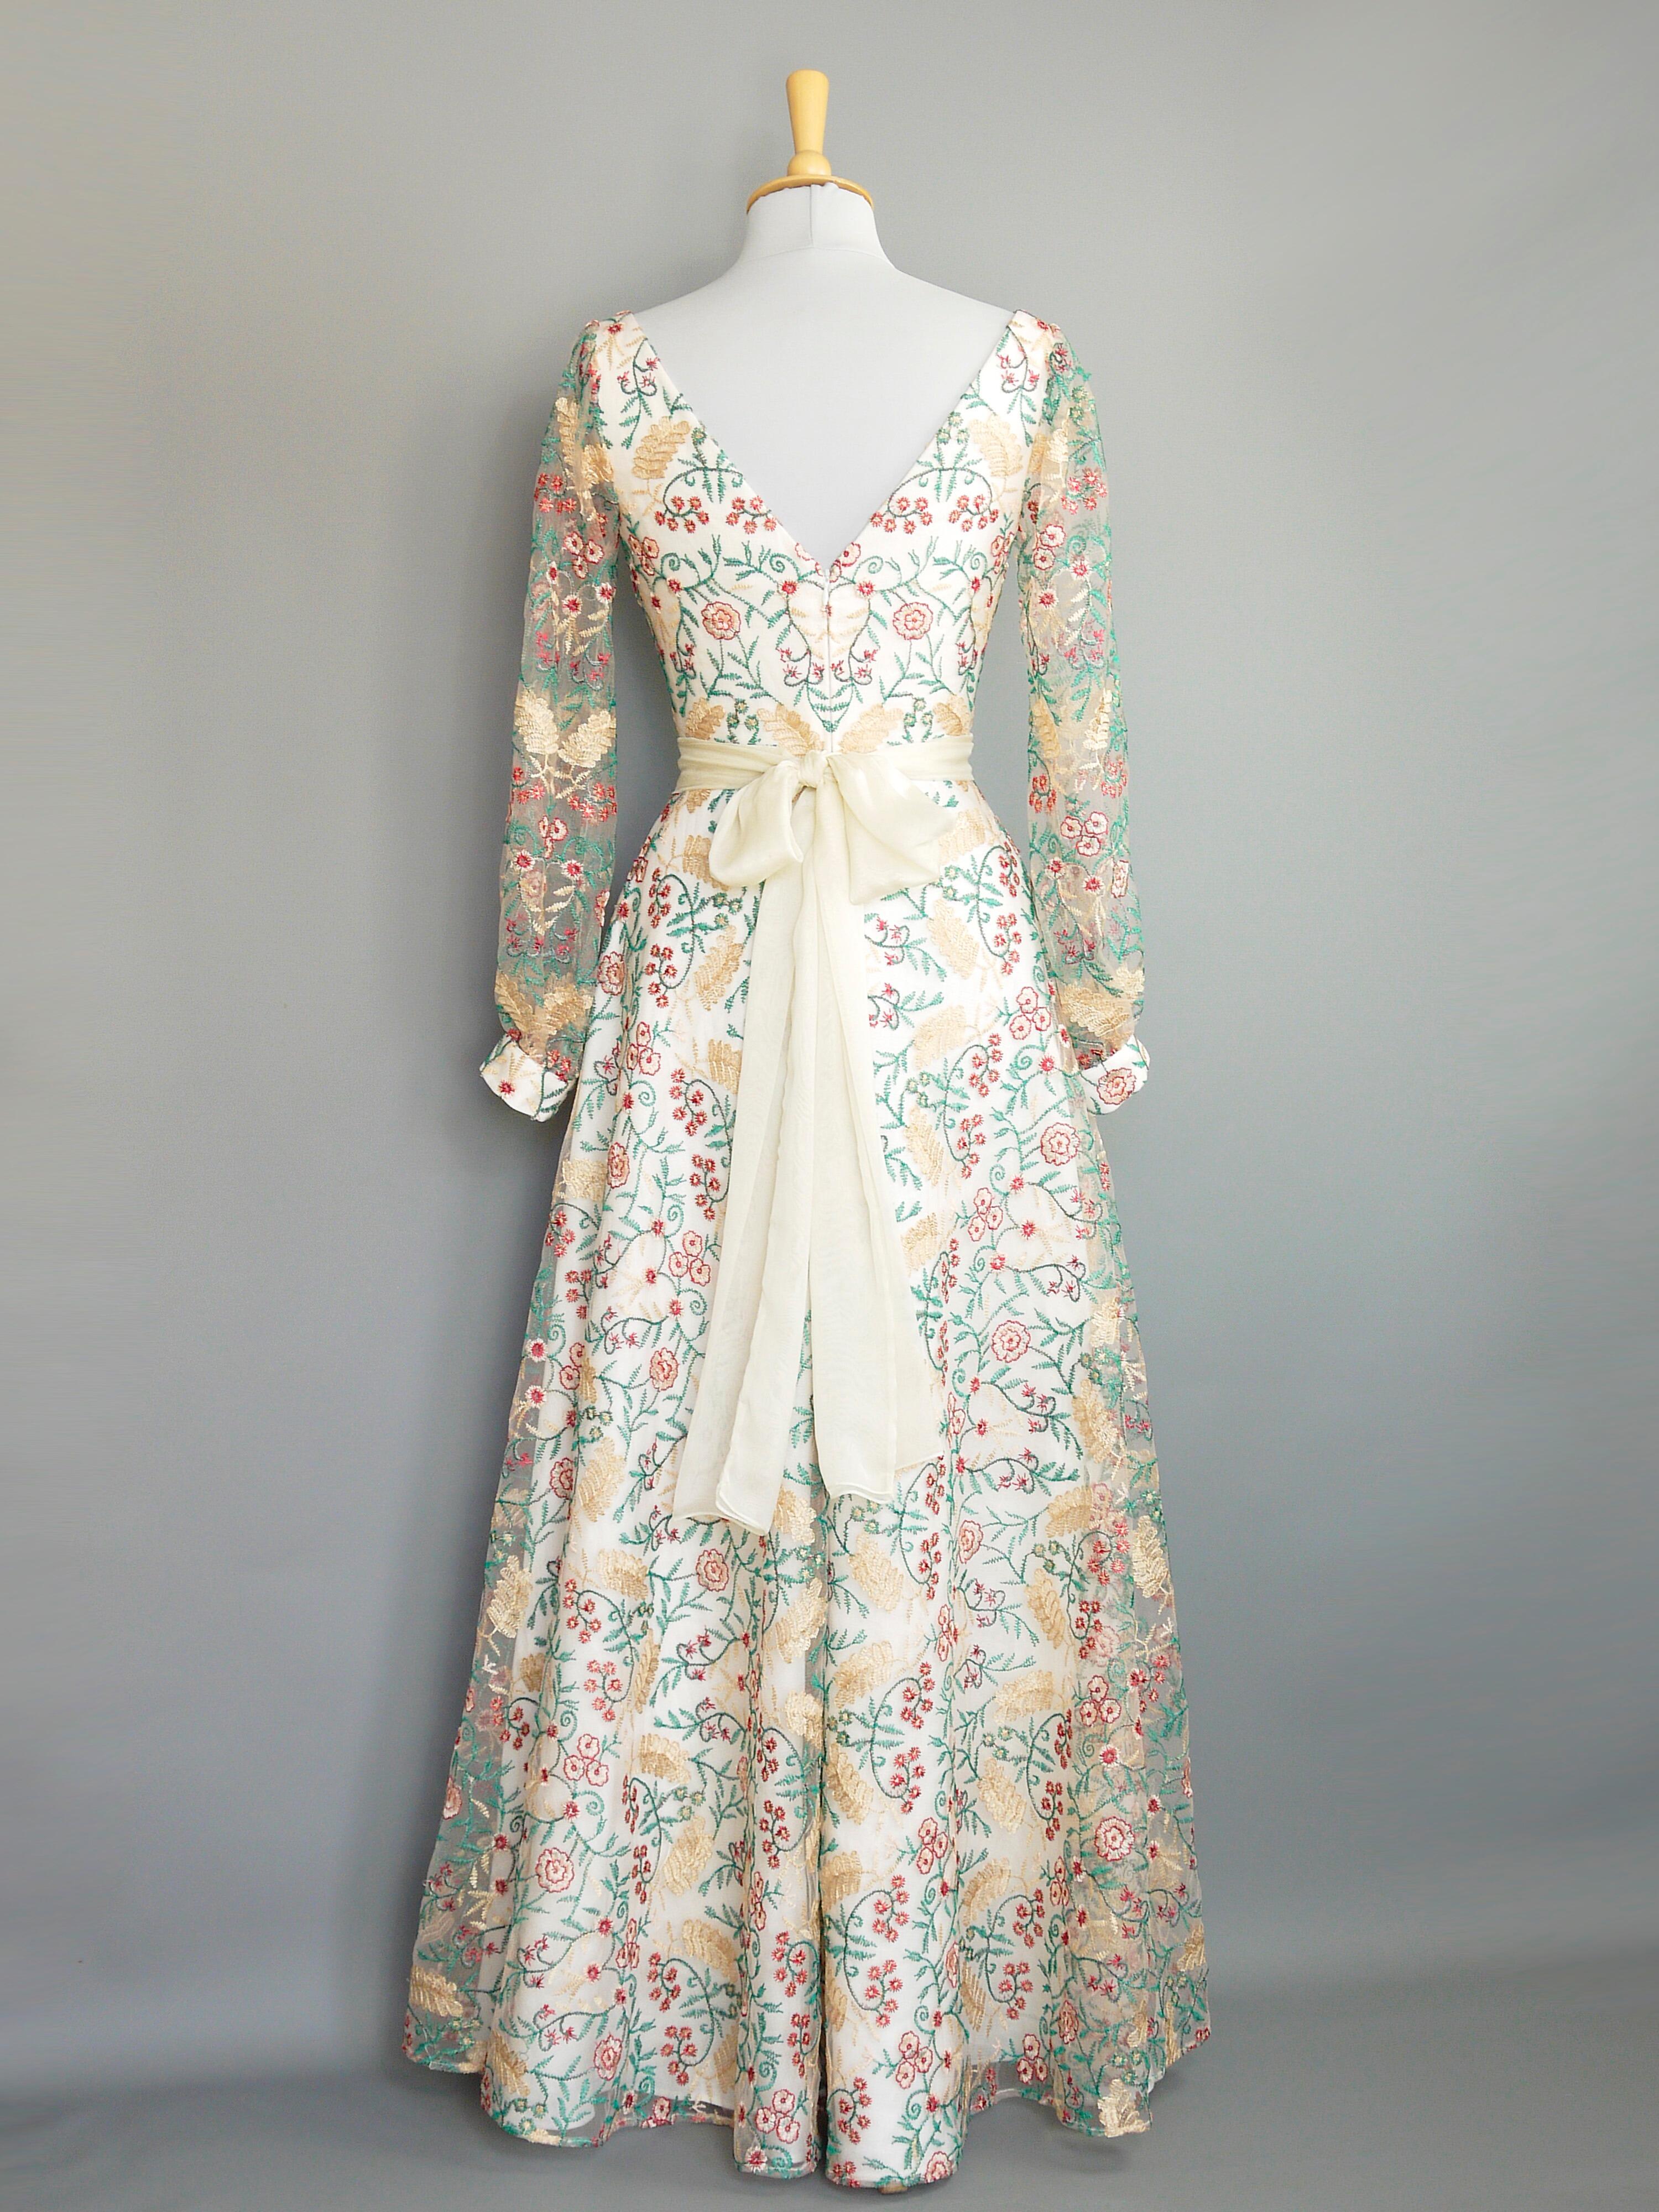 Rosetta Wedding Gown in Fern Lace & Ivory Linen